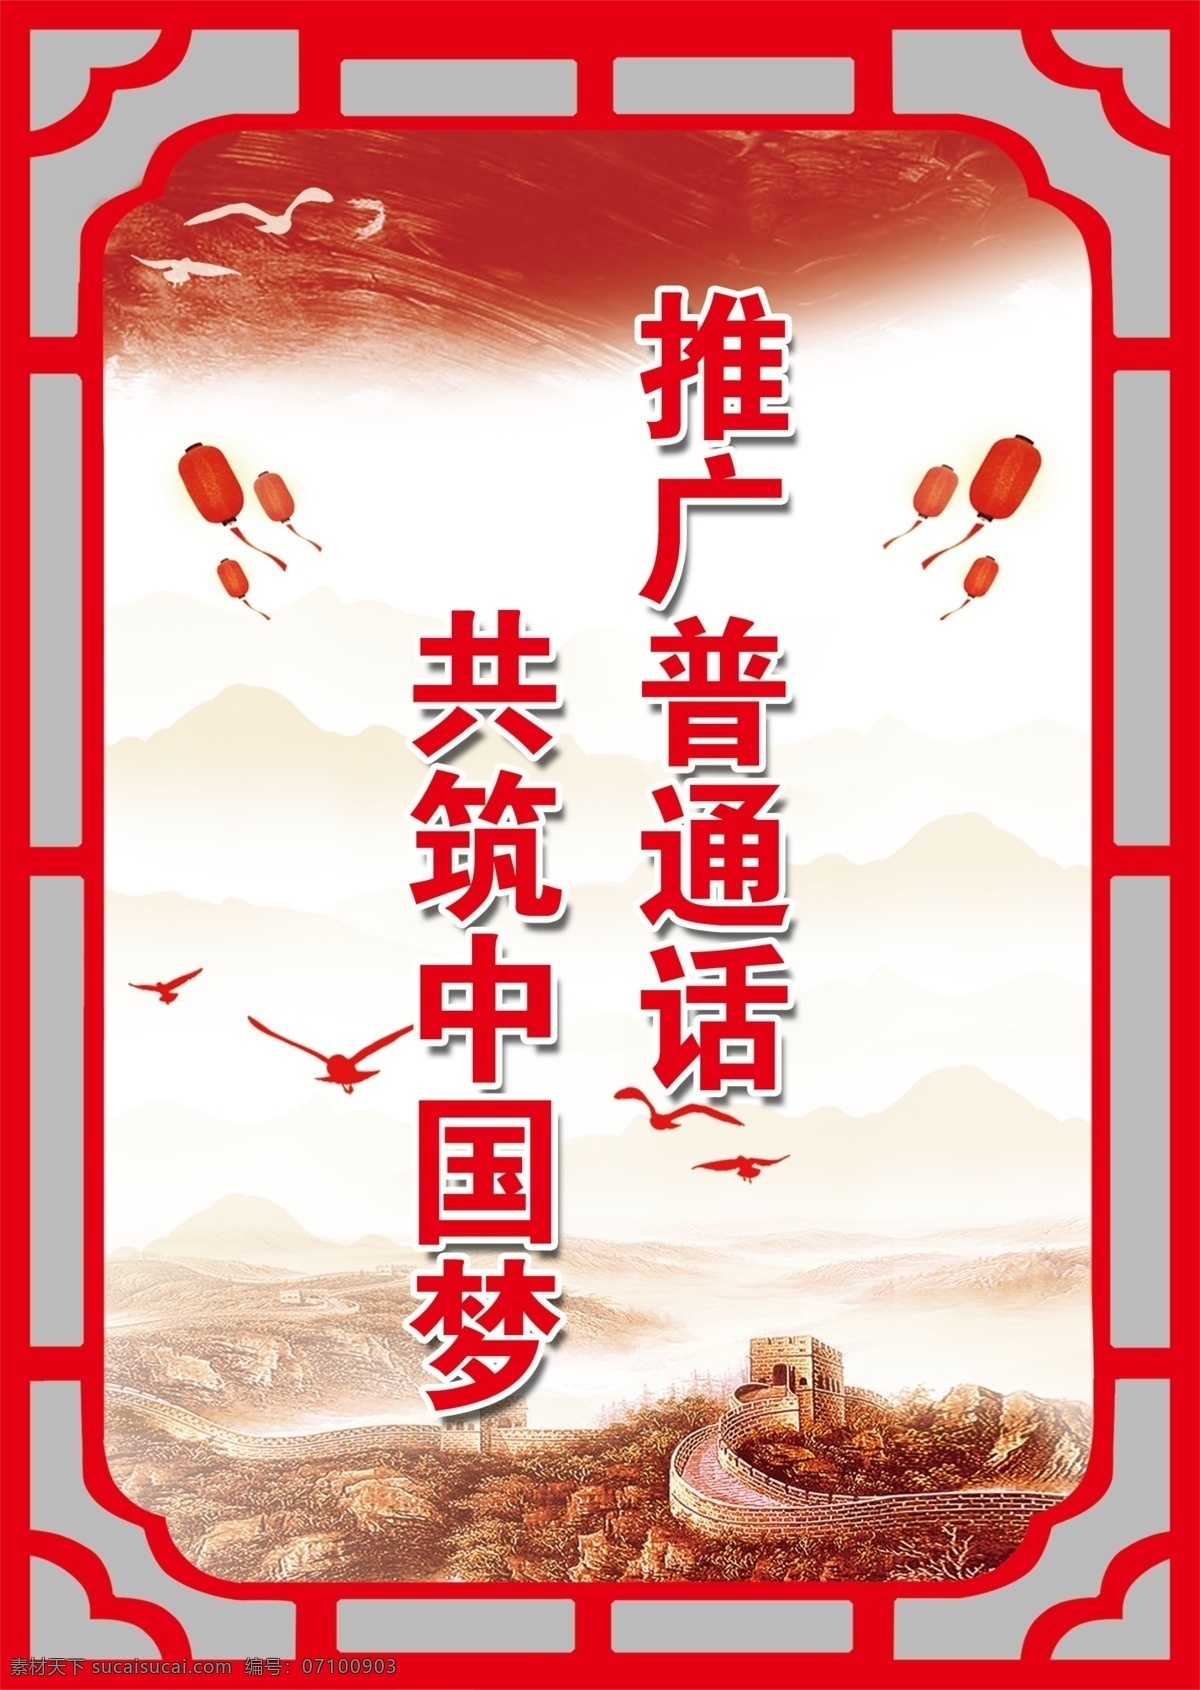 普通话 标语 推广 共筑 中国梦 红色背景 花格边框 分层